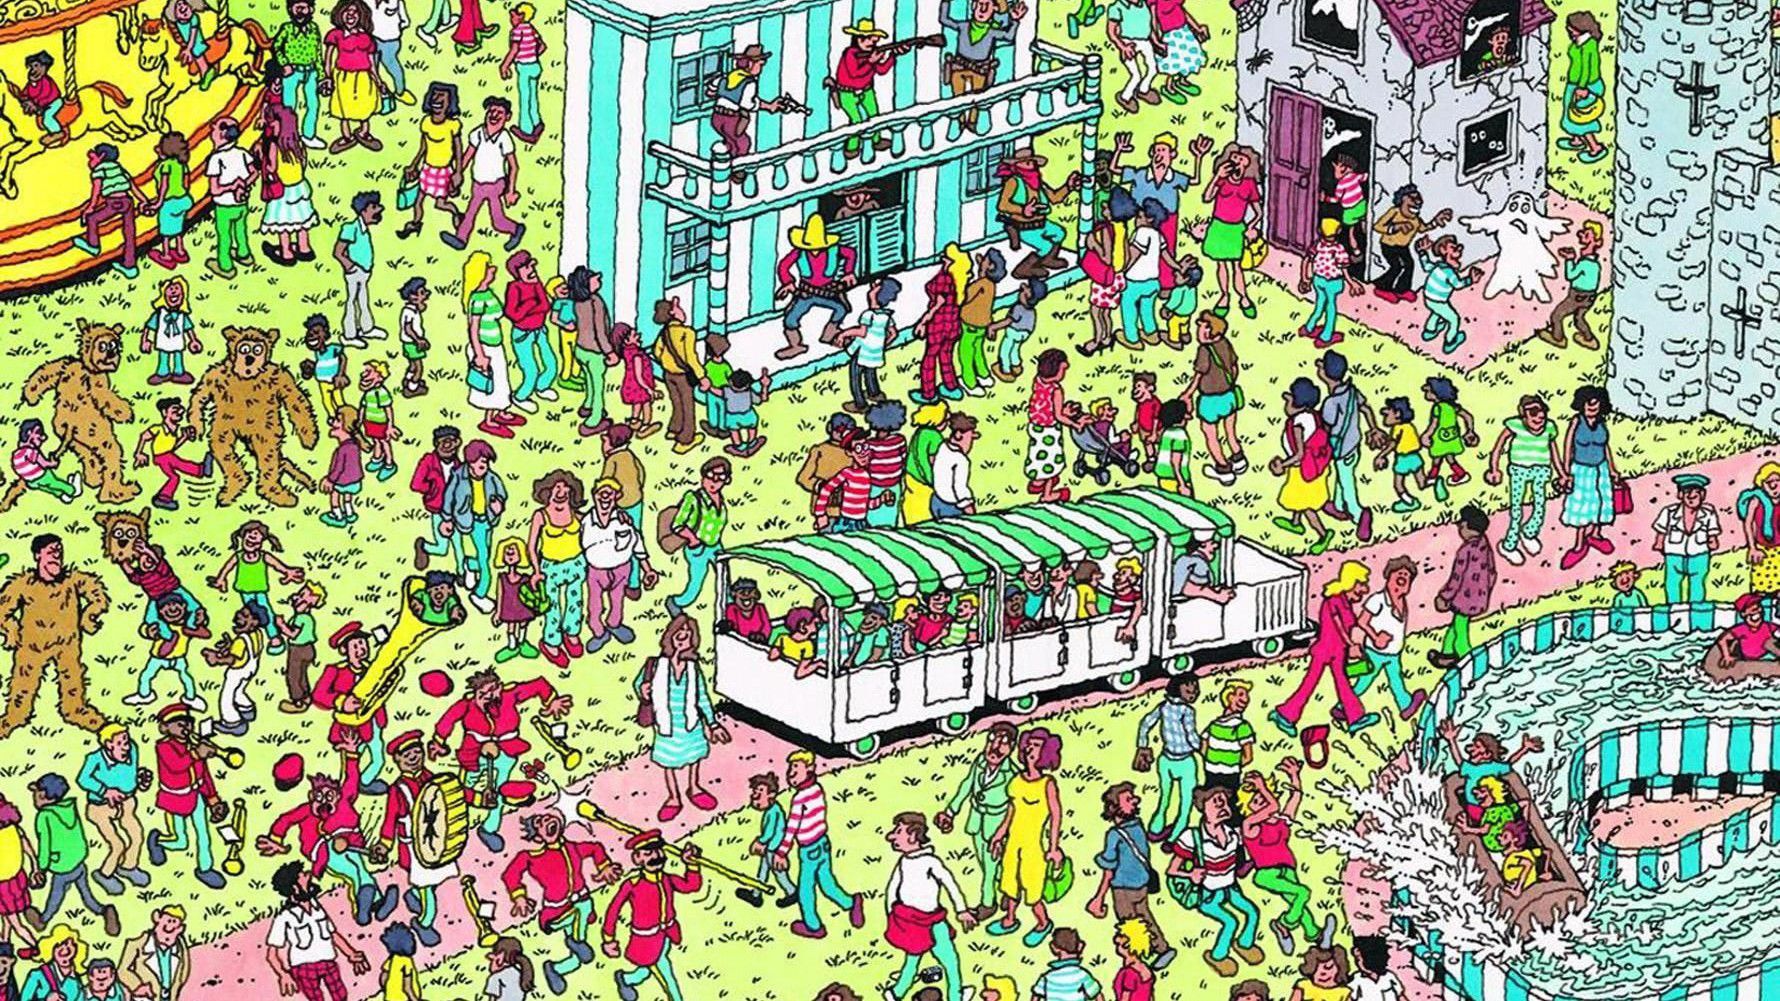 O mir. ГД Волдо. Уолли. Найди Валдо. Where's Waldo.